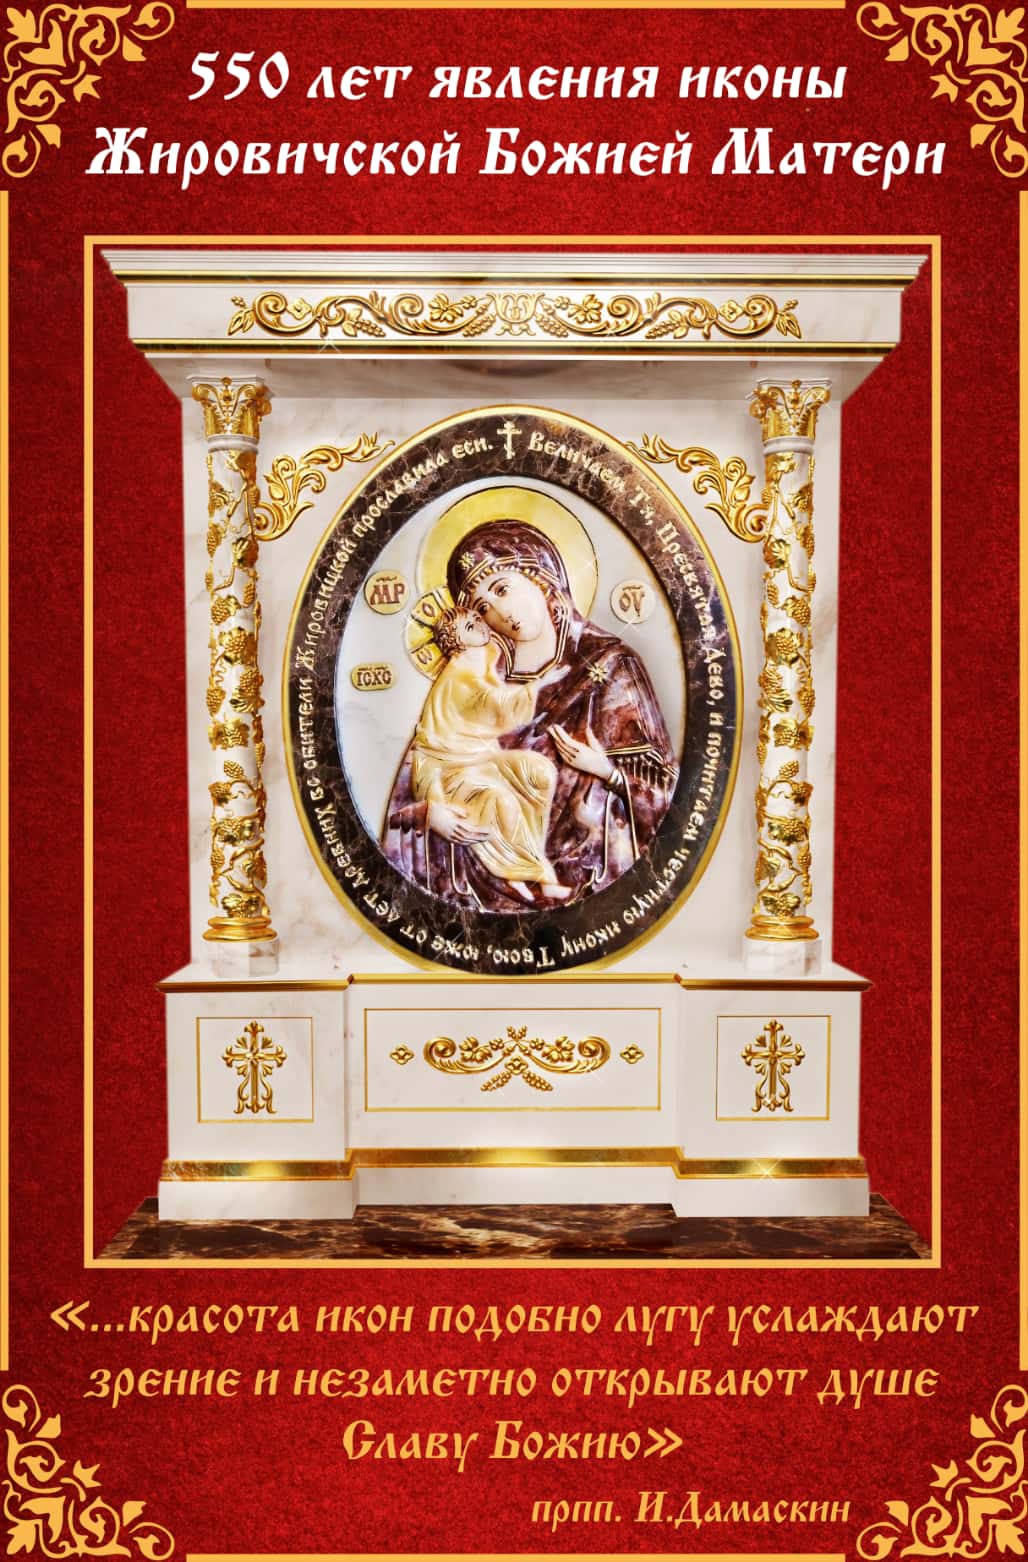 Икона Жировицкой для выставки икон, фото